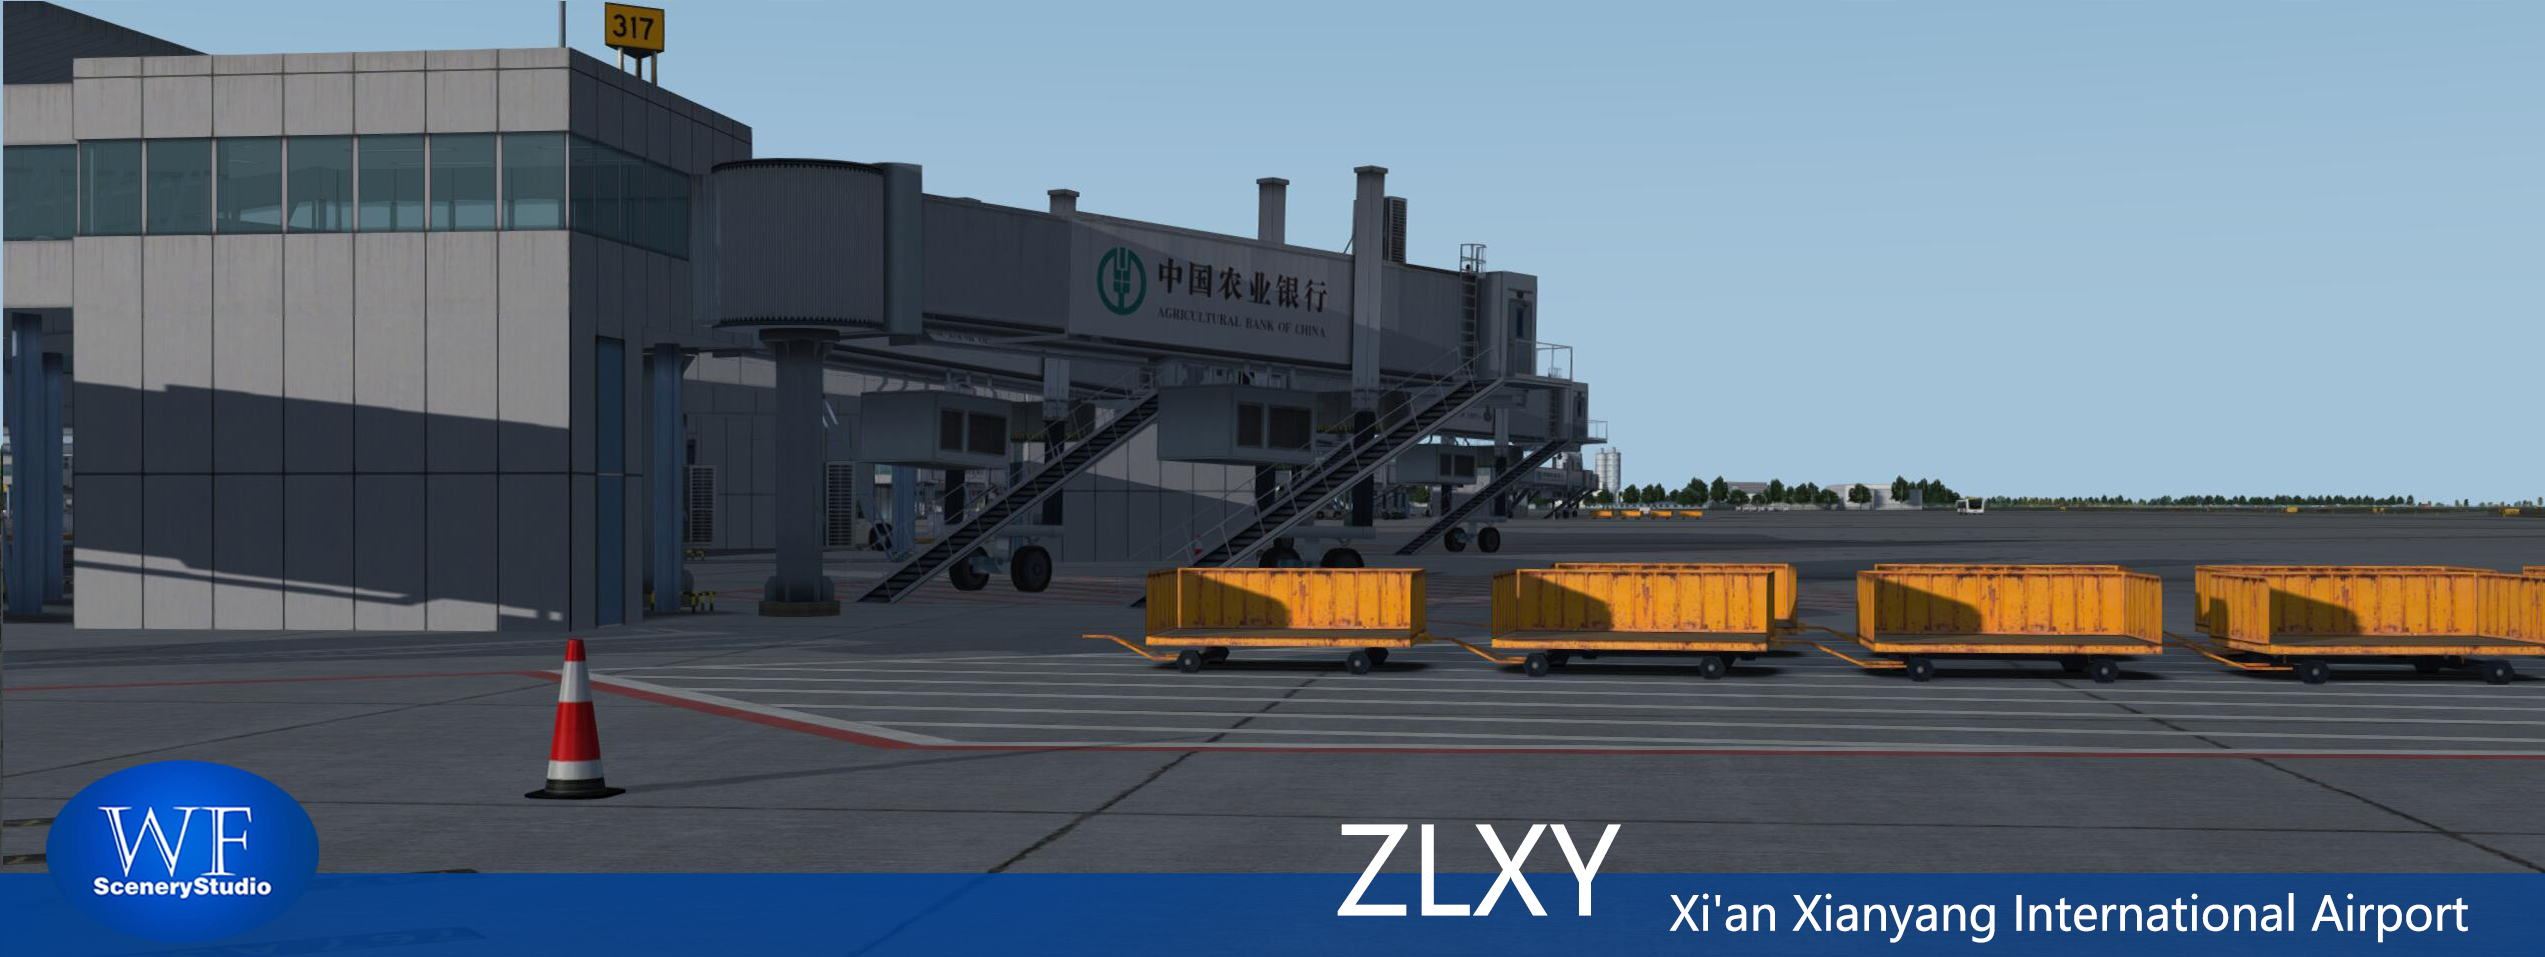 西安咸阳国际机场FSX和P3DV3 版本发布-874 